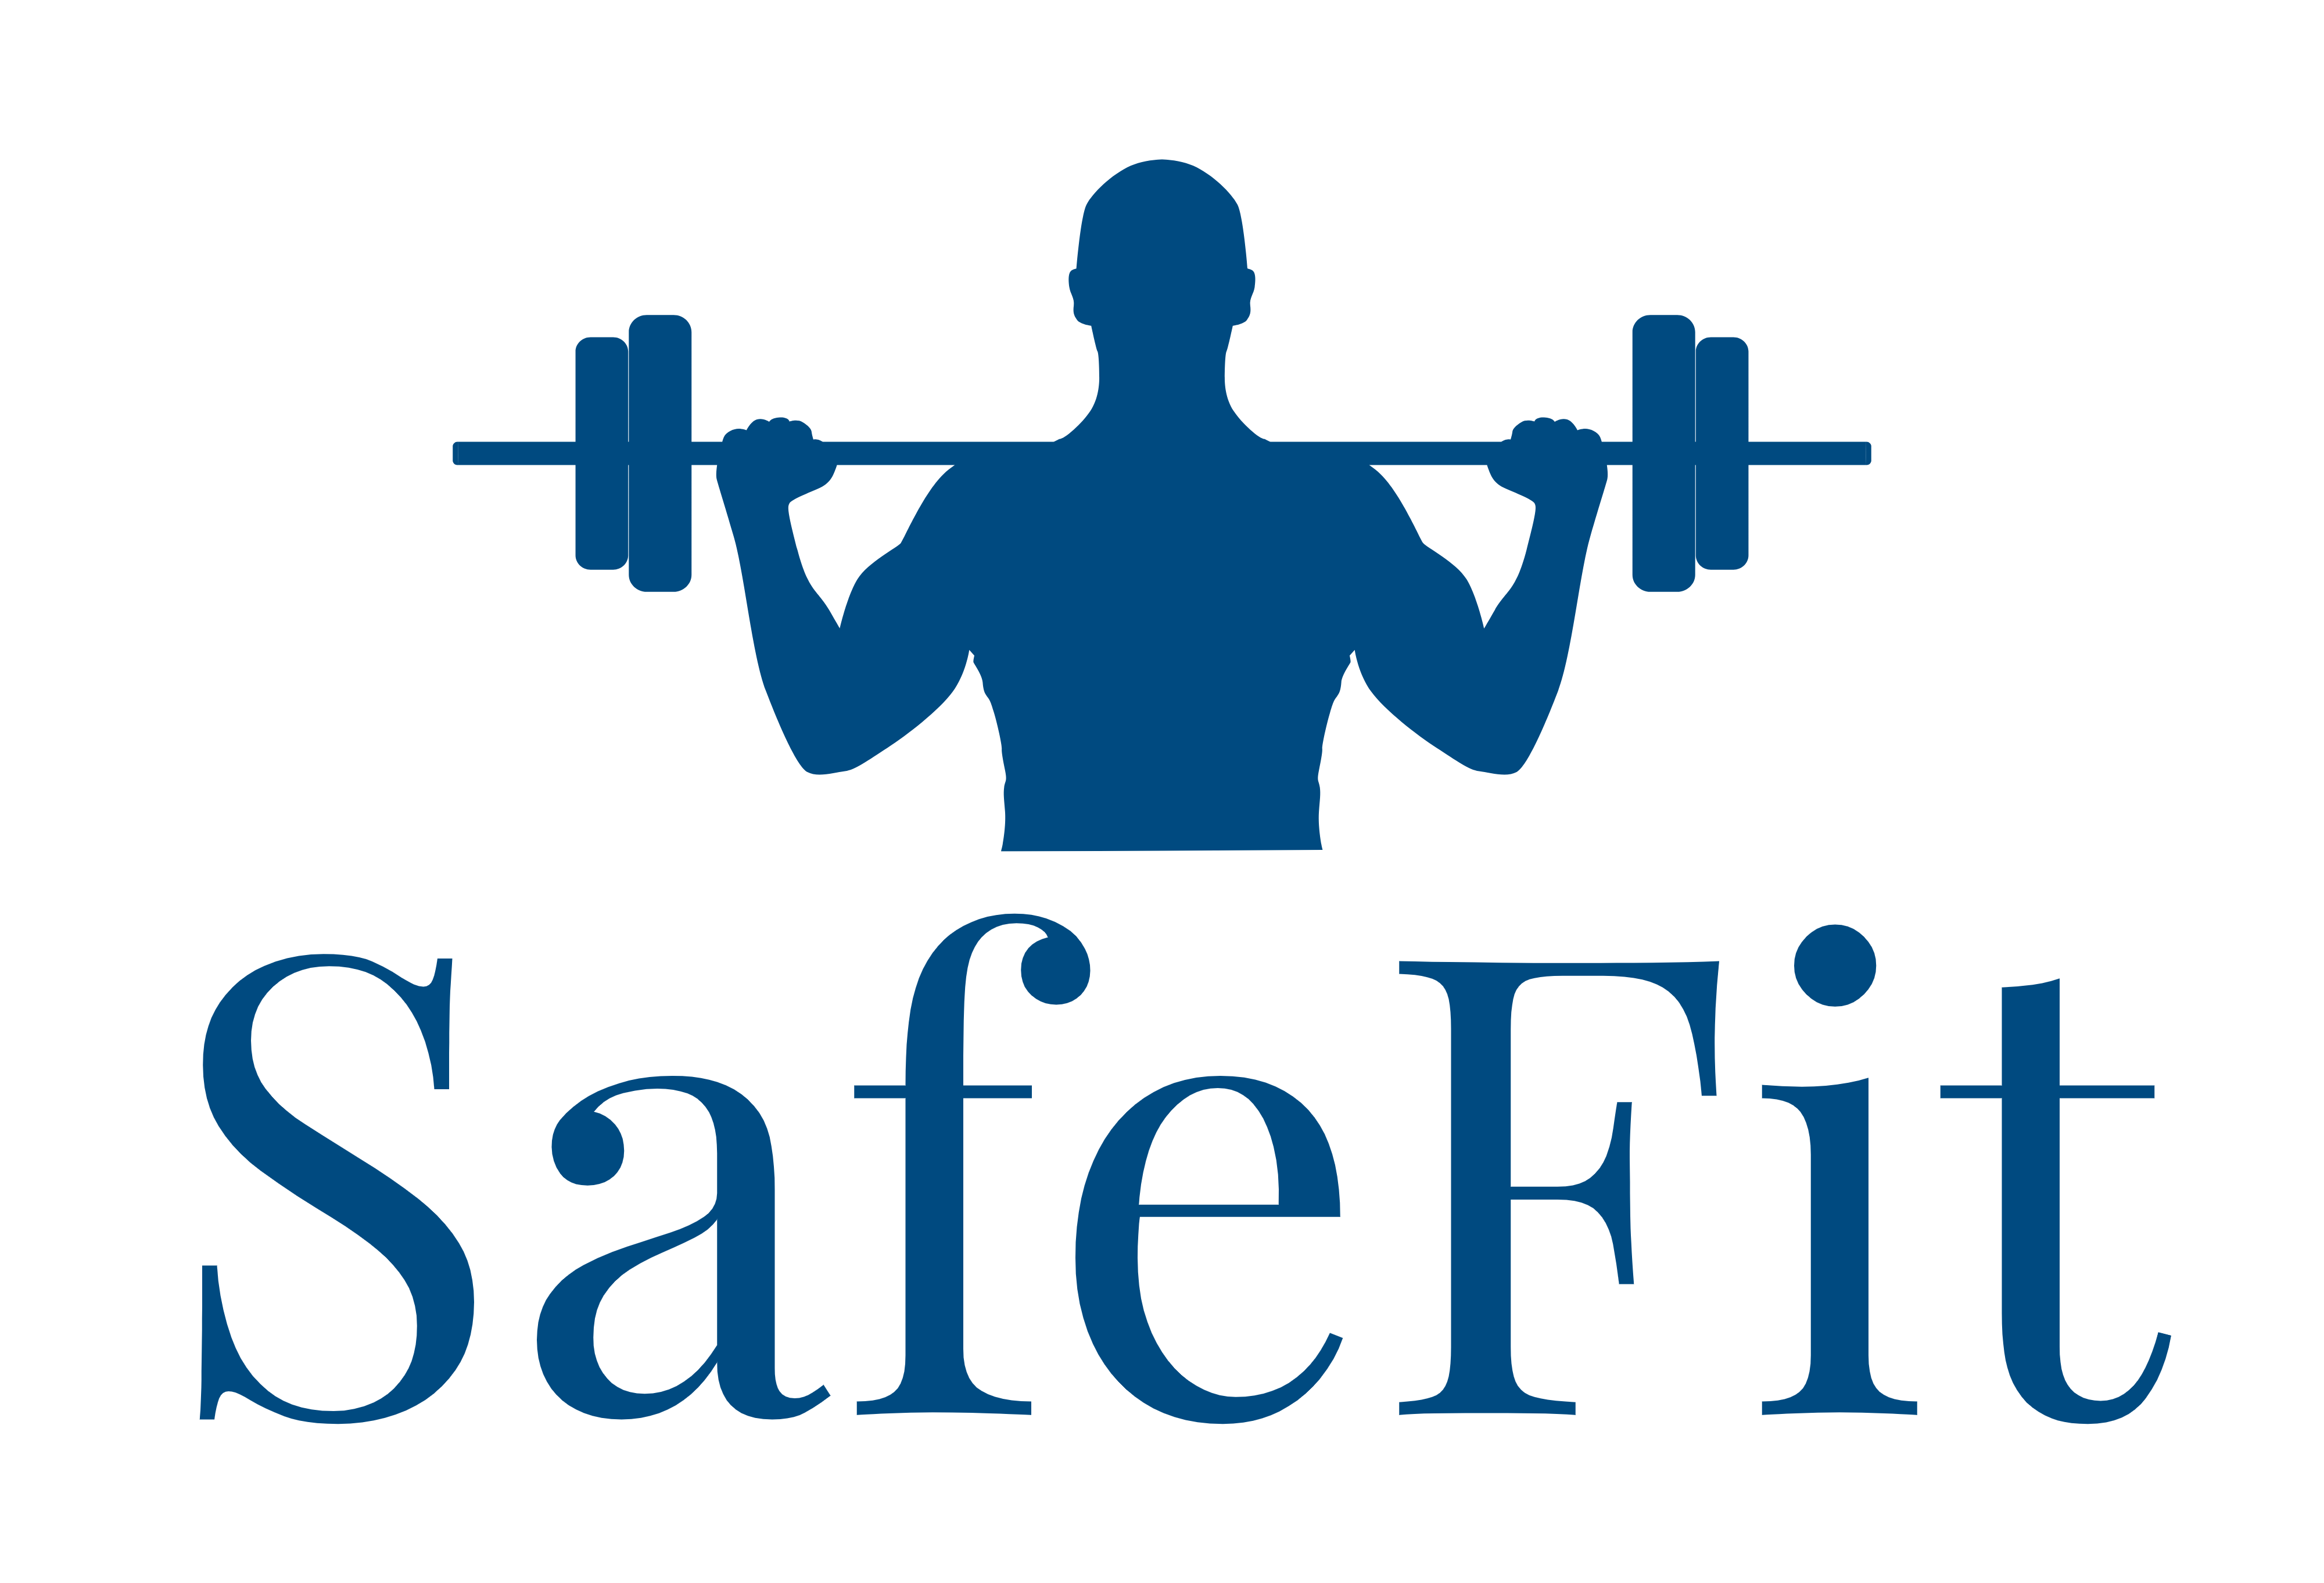 SafeFit